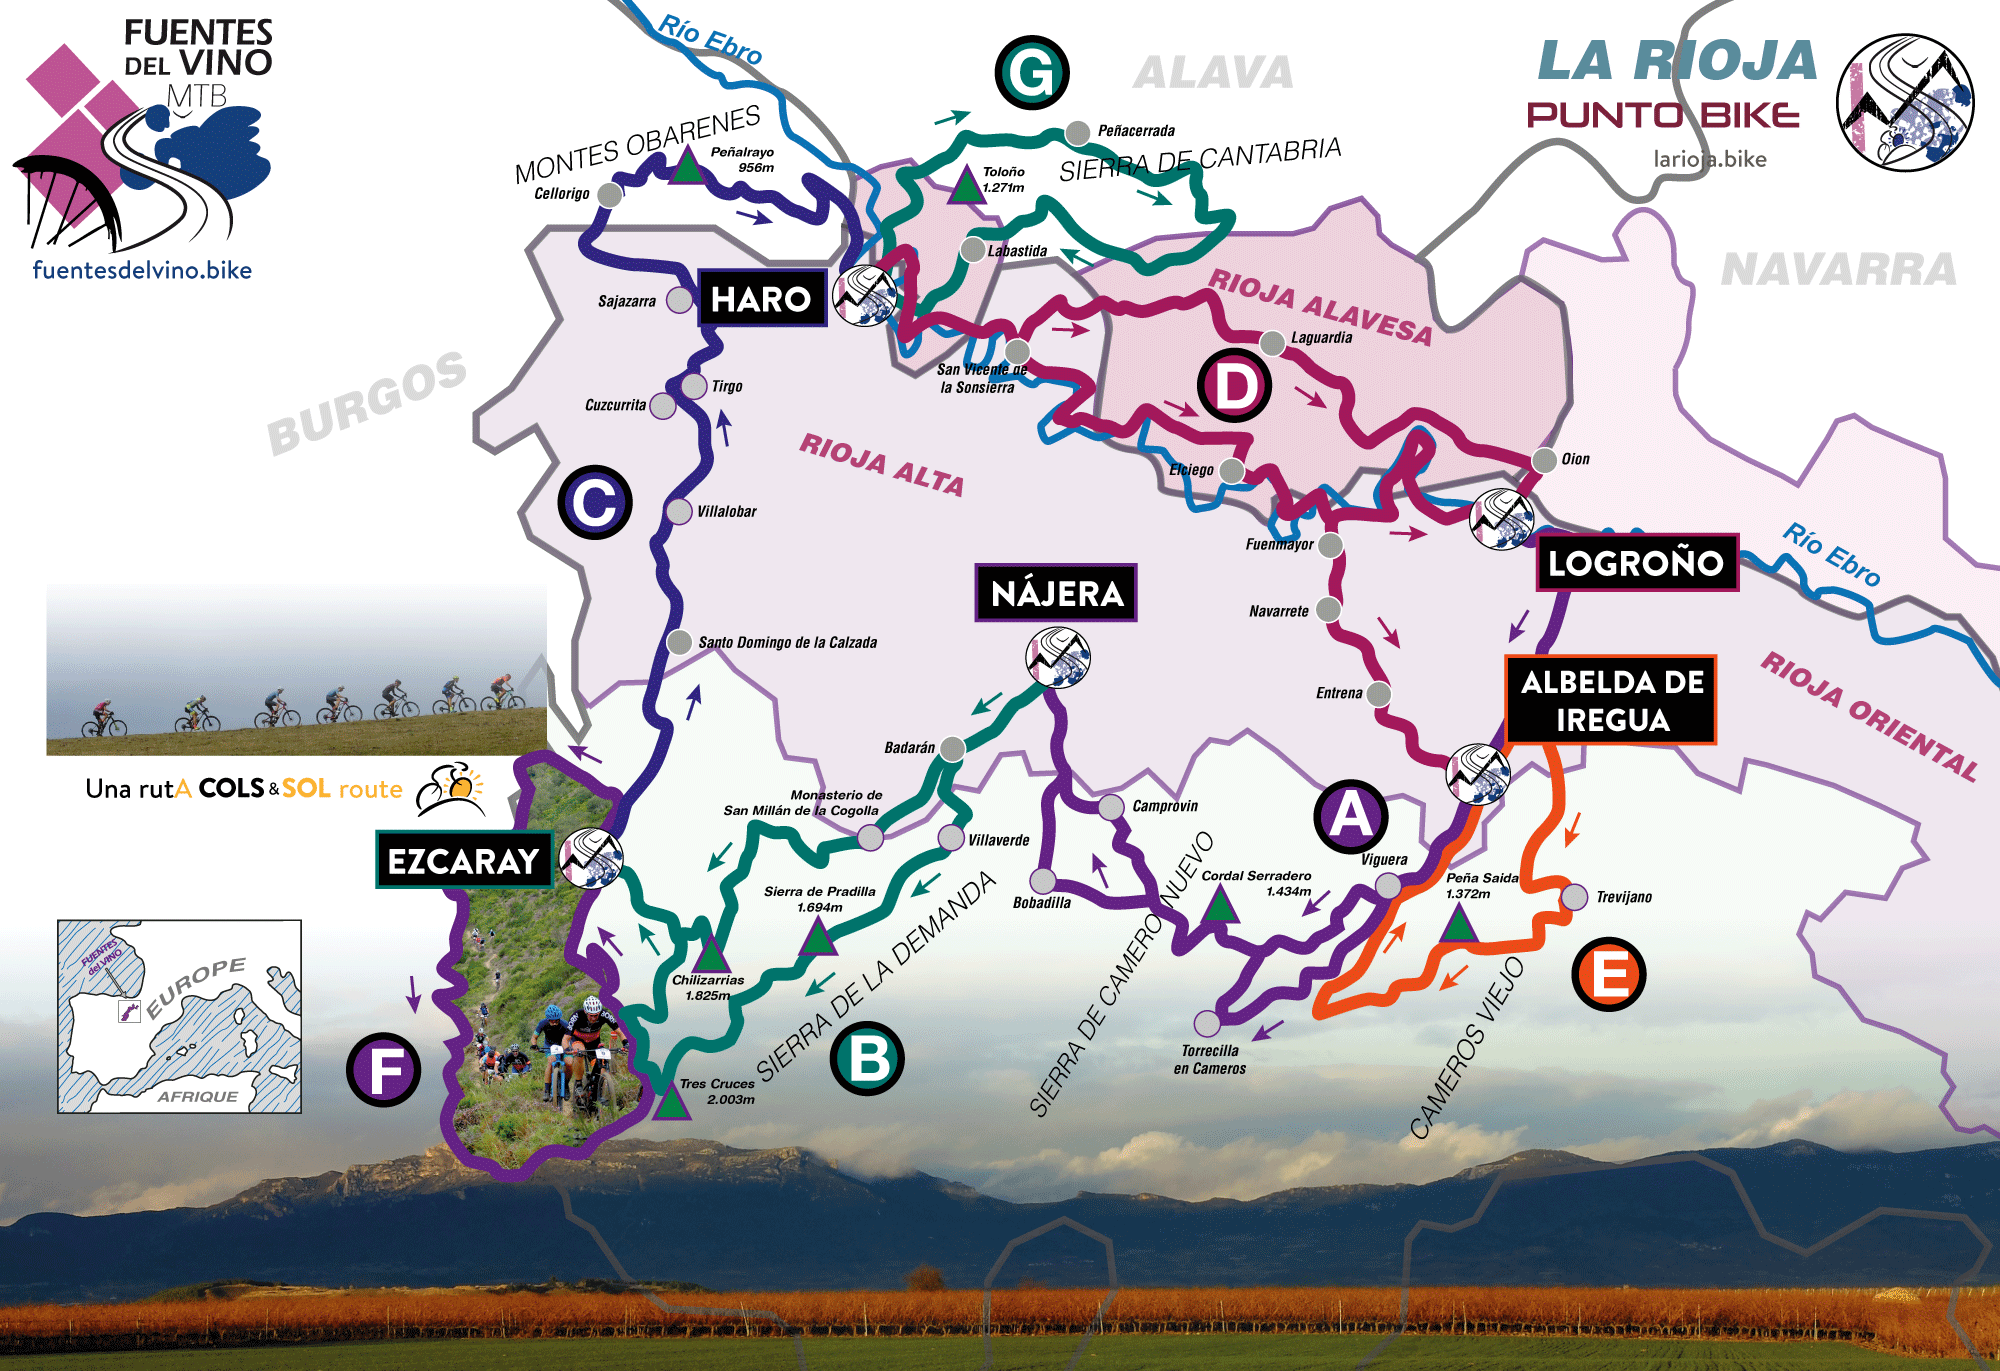 Fuentes-del-Vino-MTB-map